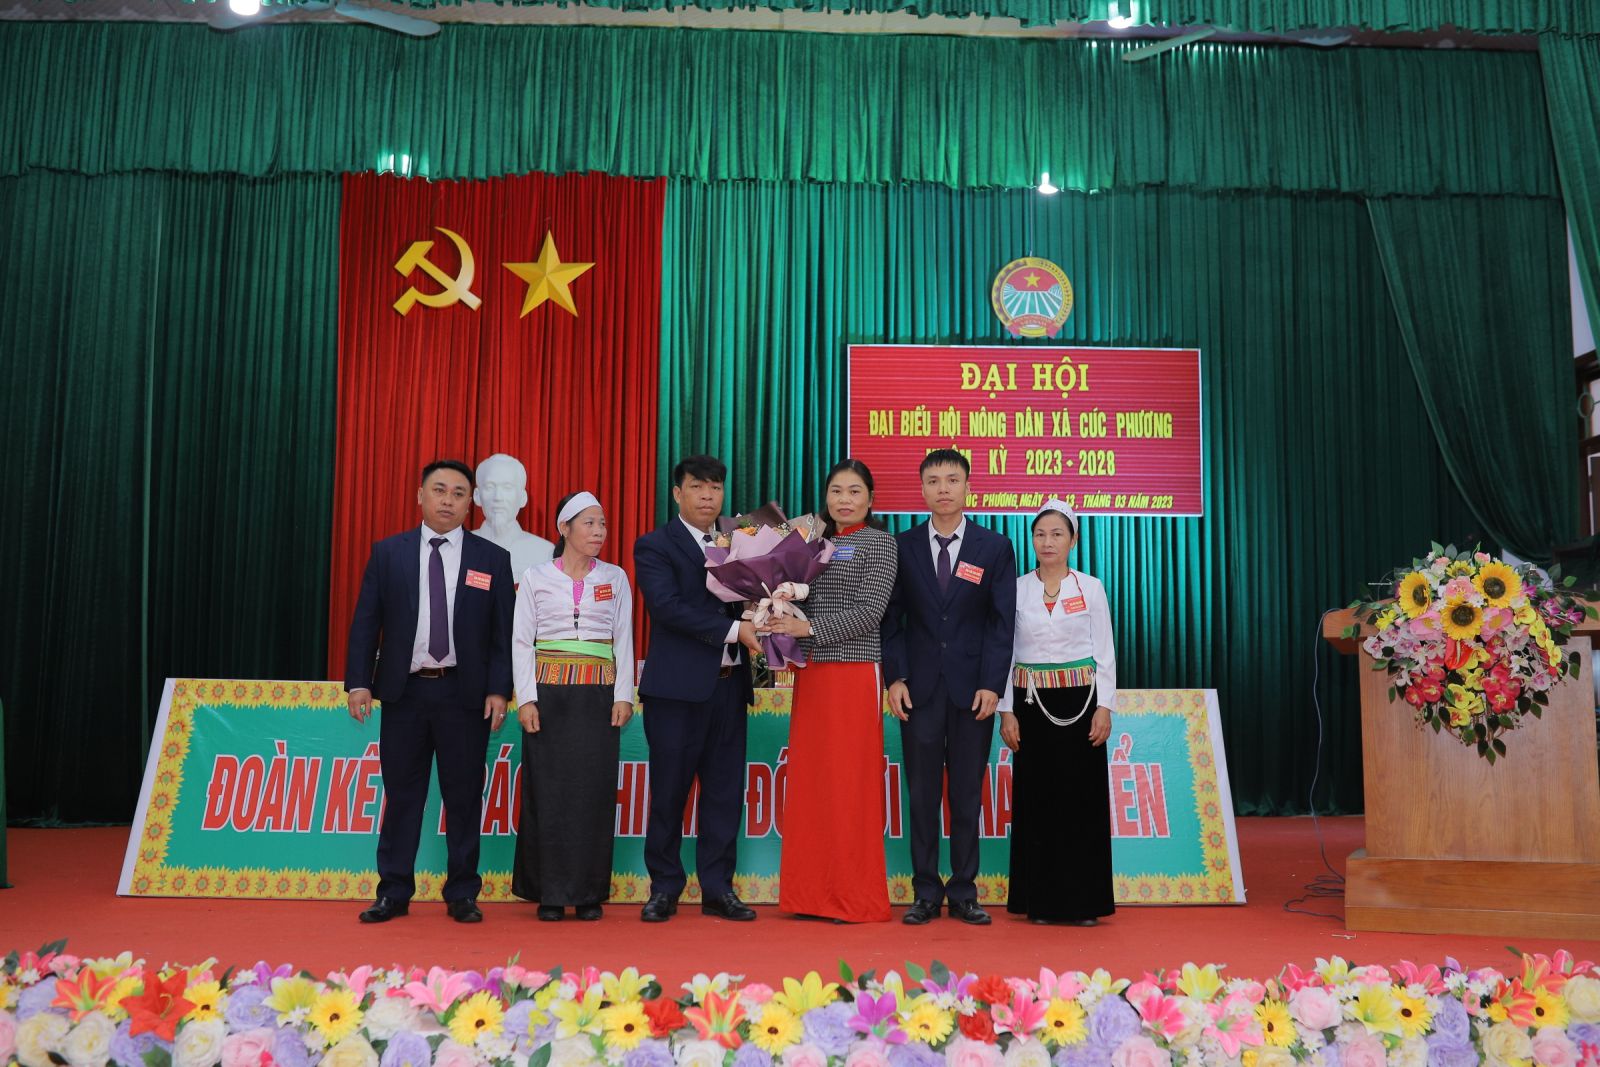 Đồng chí Bí thư Đảng ủy tặng hoa chúc mừng thành công của Đại hội